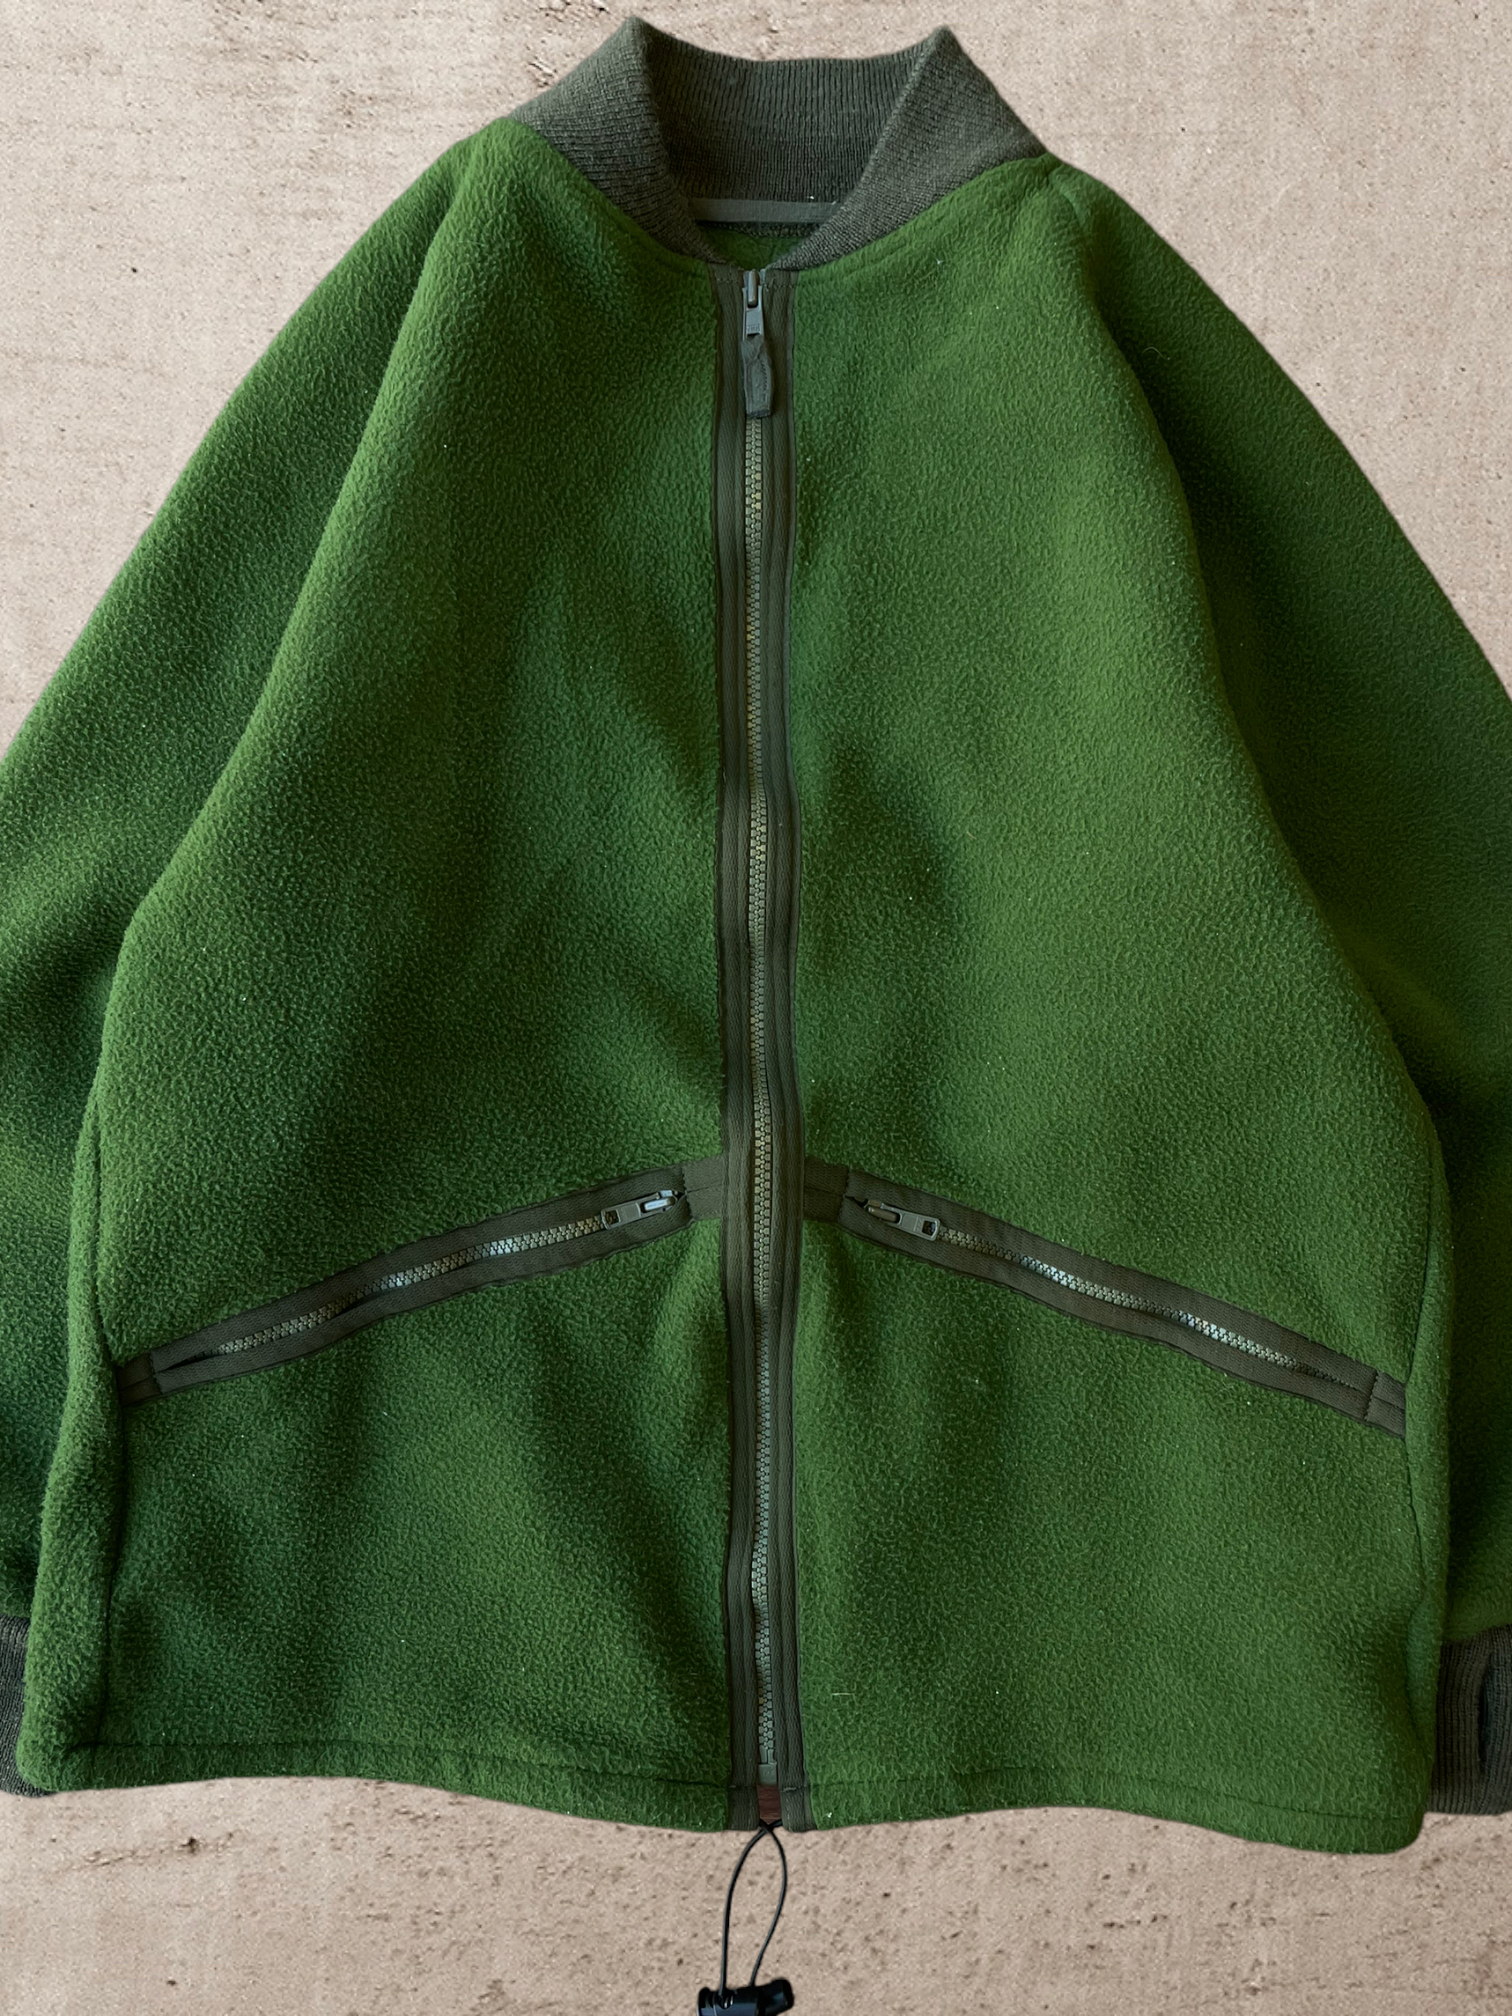 Vintage Green Zip up Fleece - Medium